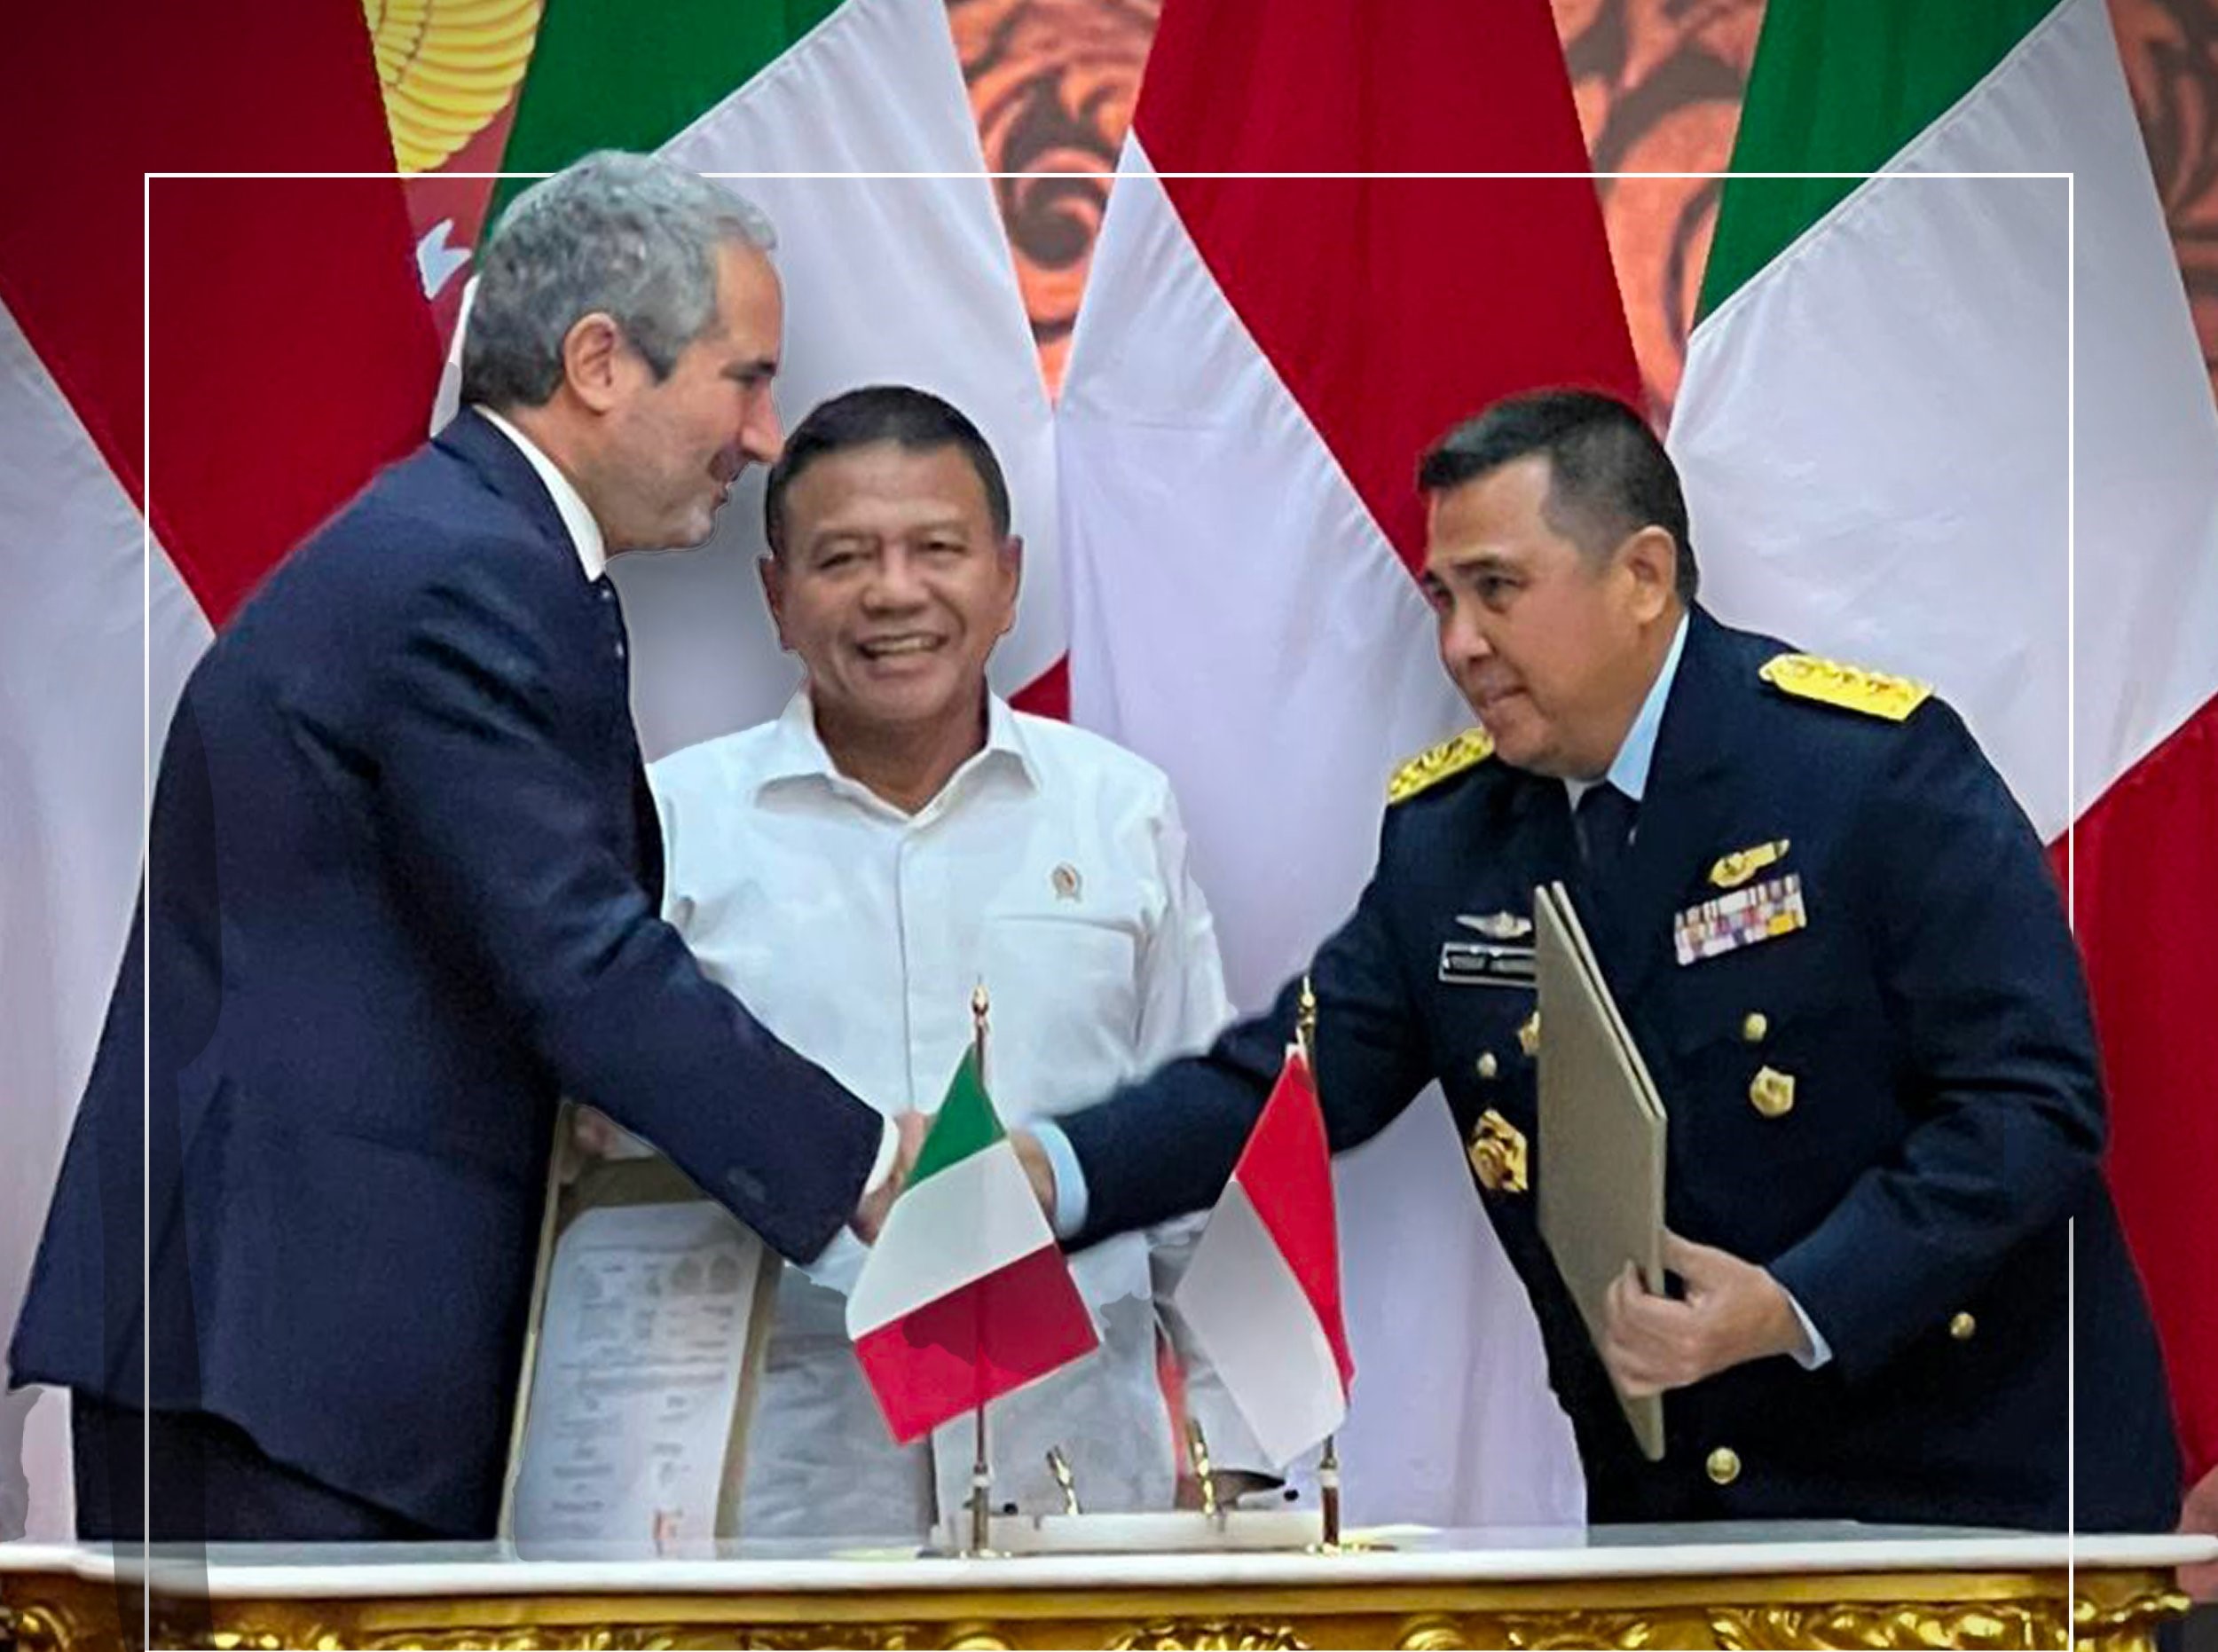 شركة “فينكانتيري” الإيطالية تزود إندونيسيا بسفن حربية بقيمة 1.18 مليار يورو